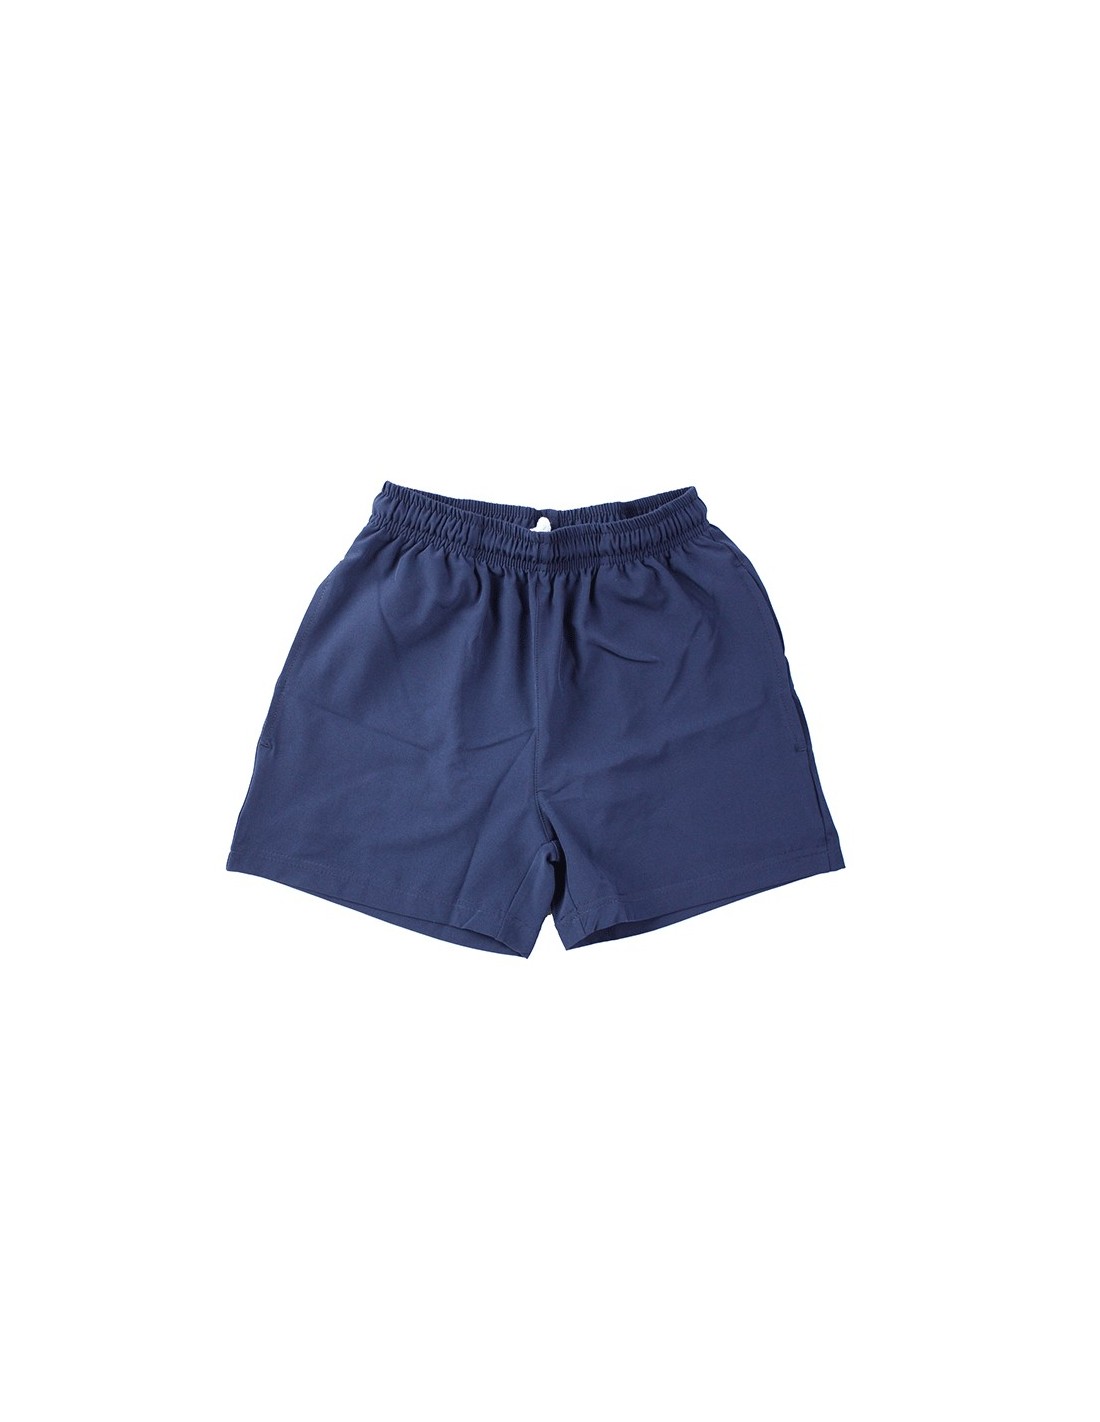 Plain Navy Stretchy Shorts